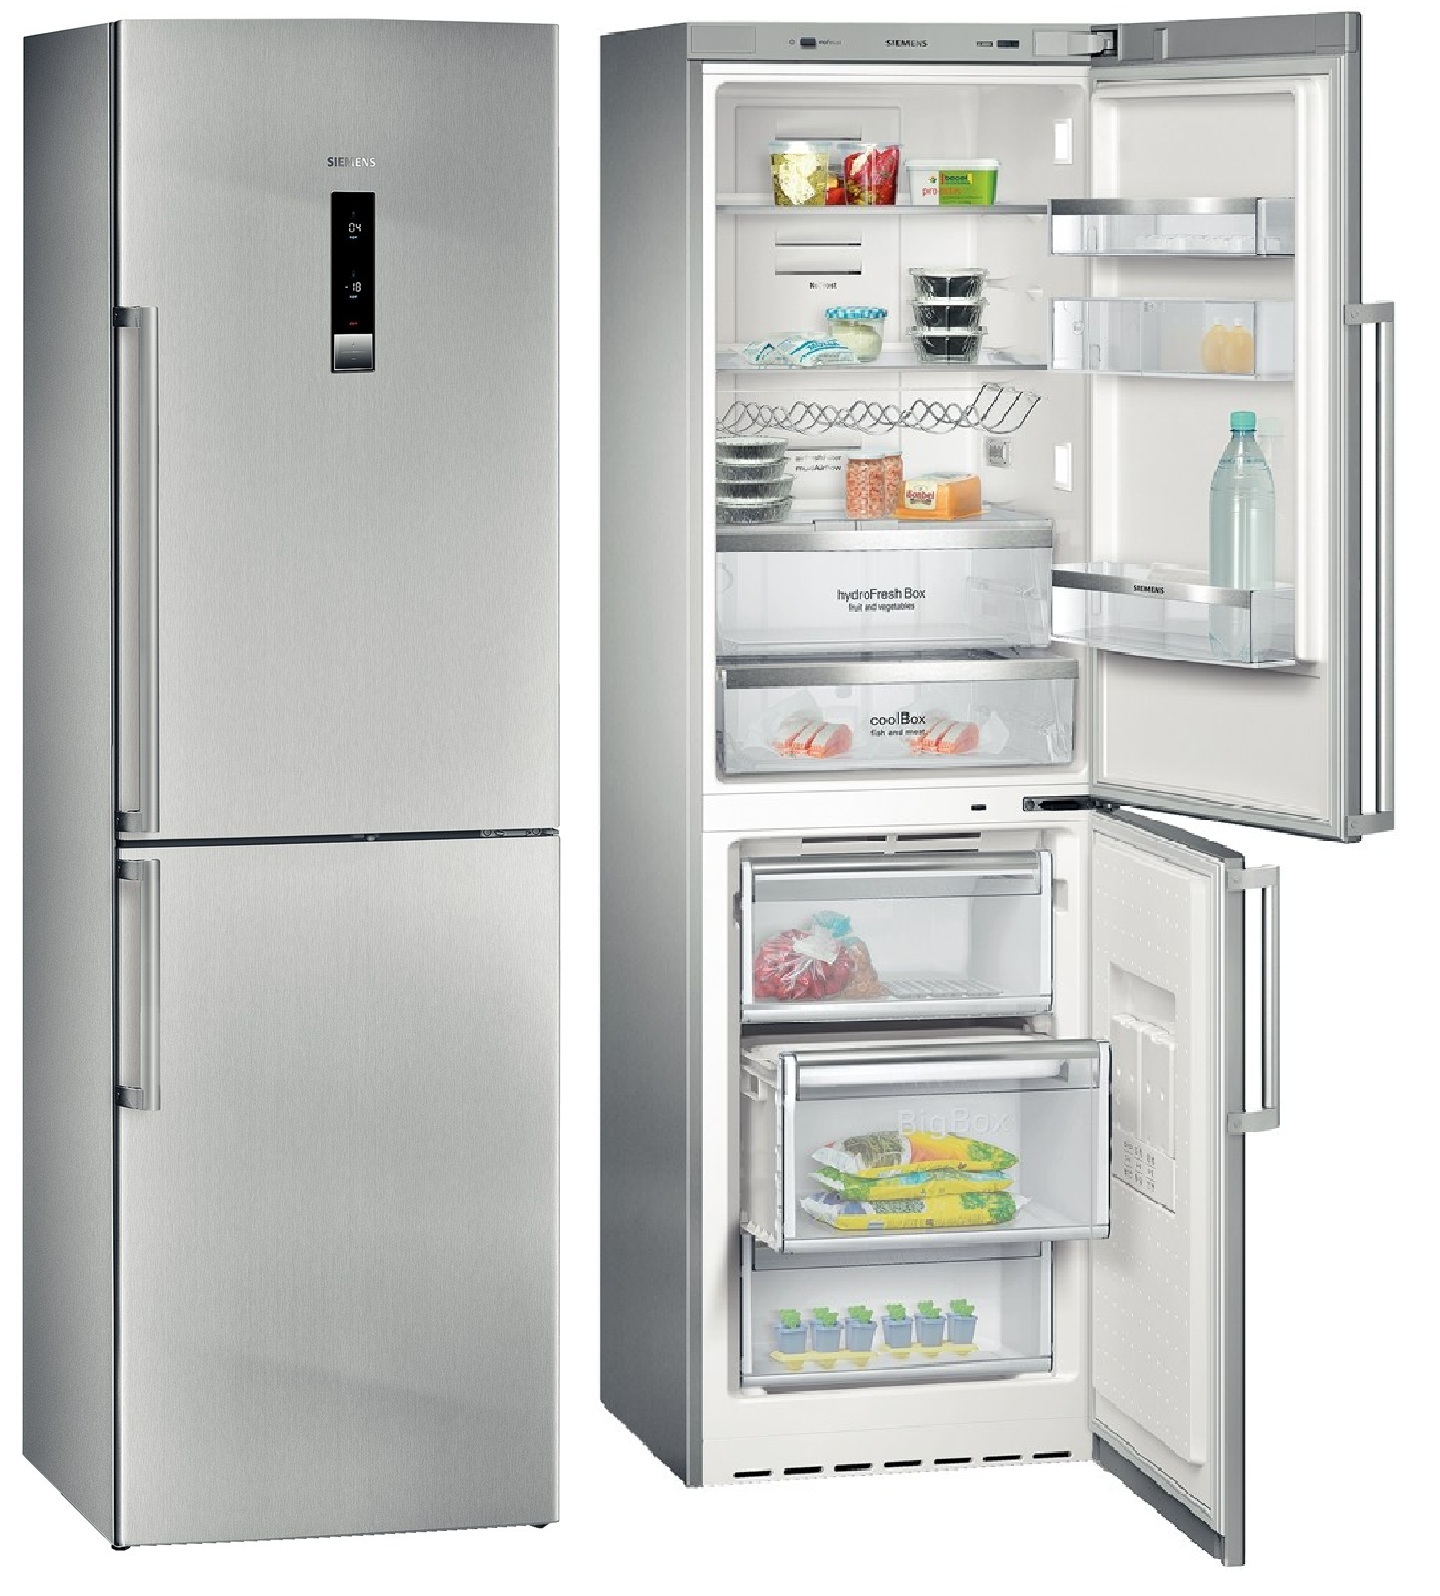 Cuál es la diferencia entre un frigorífico No Frost y uno estático?